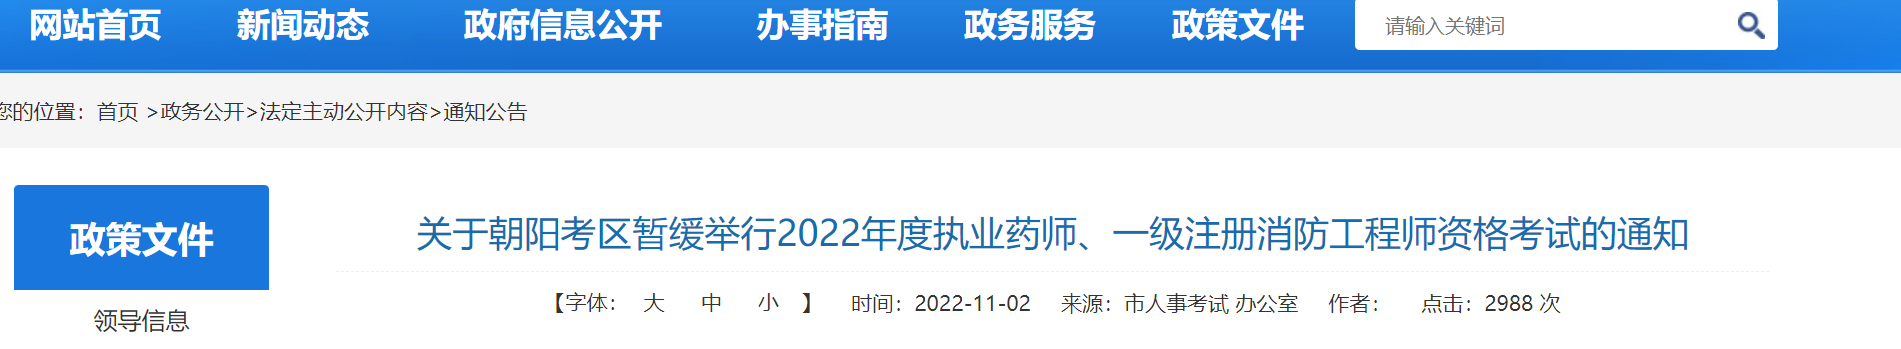 2022辽宁朝阳一级注册消防工程师考试暂缓举行